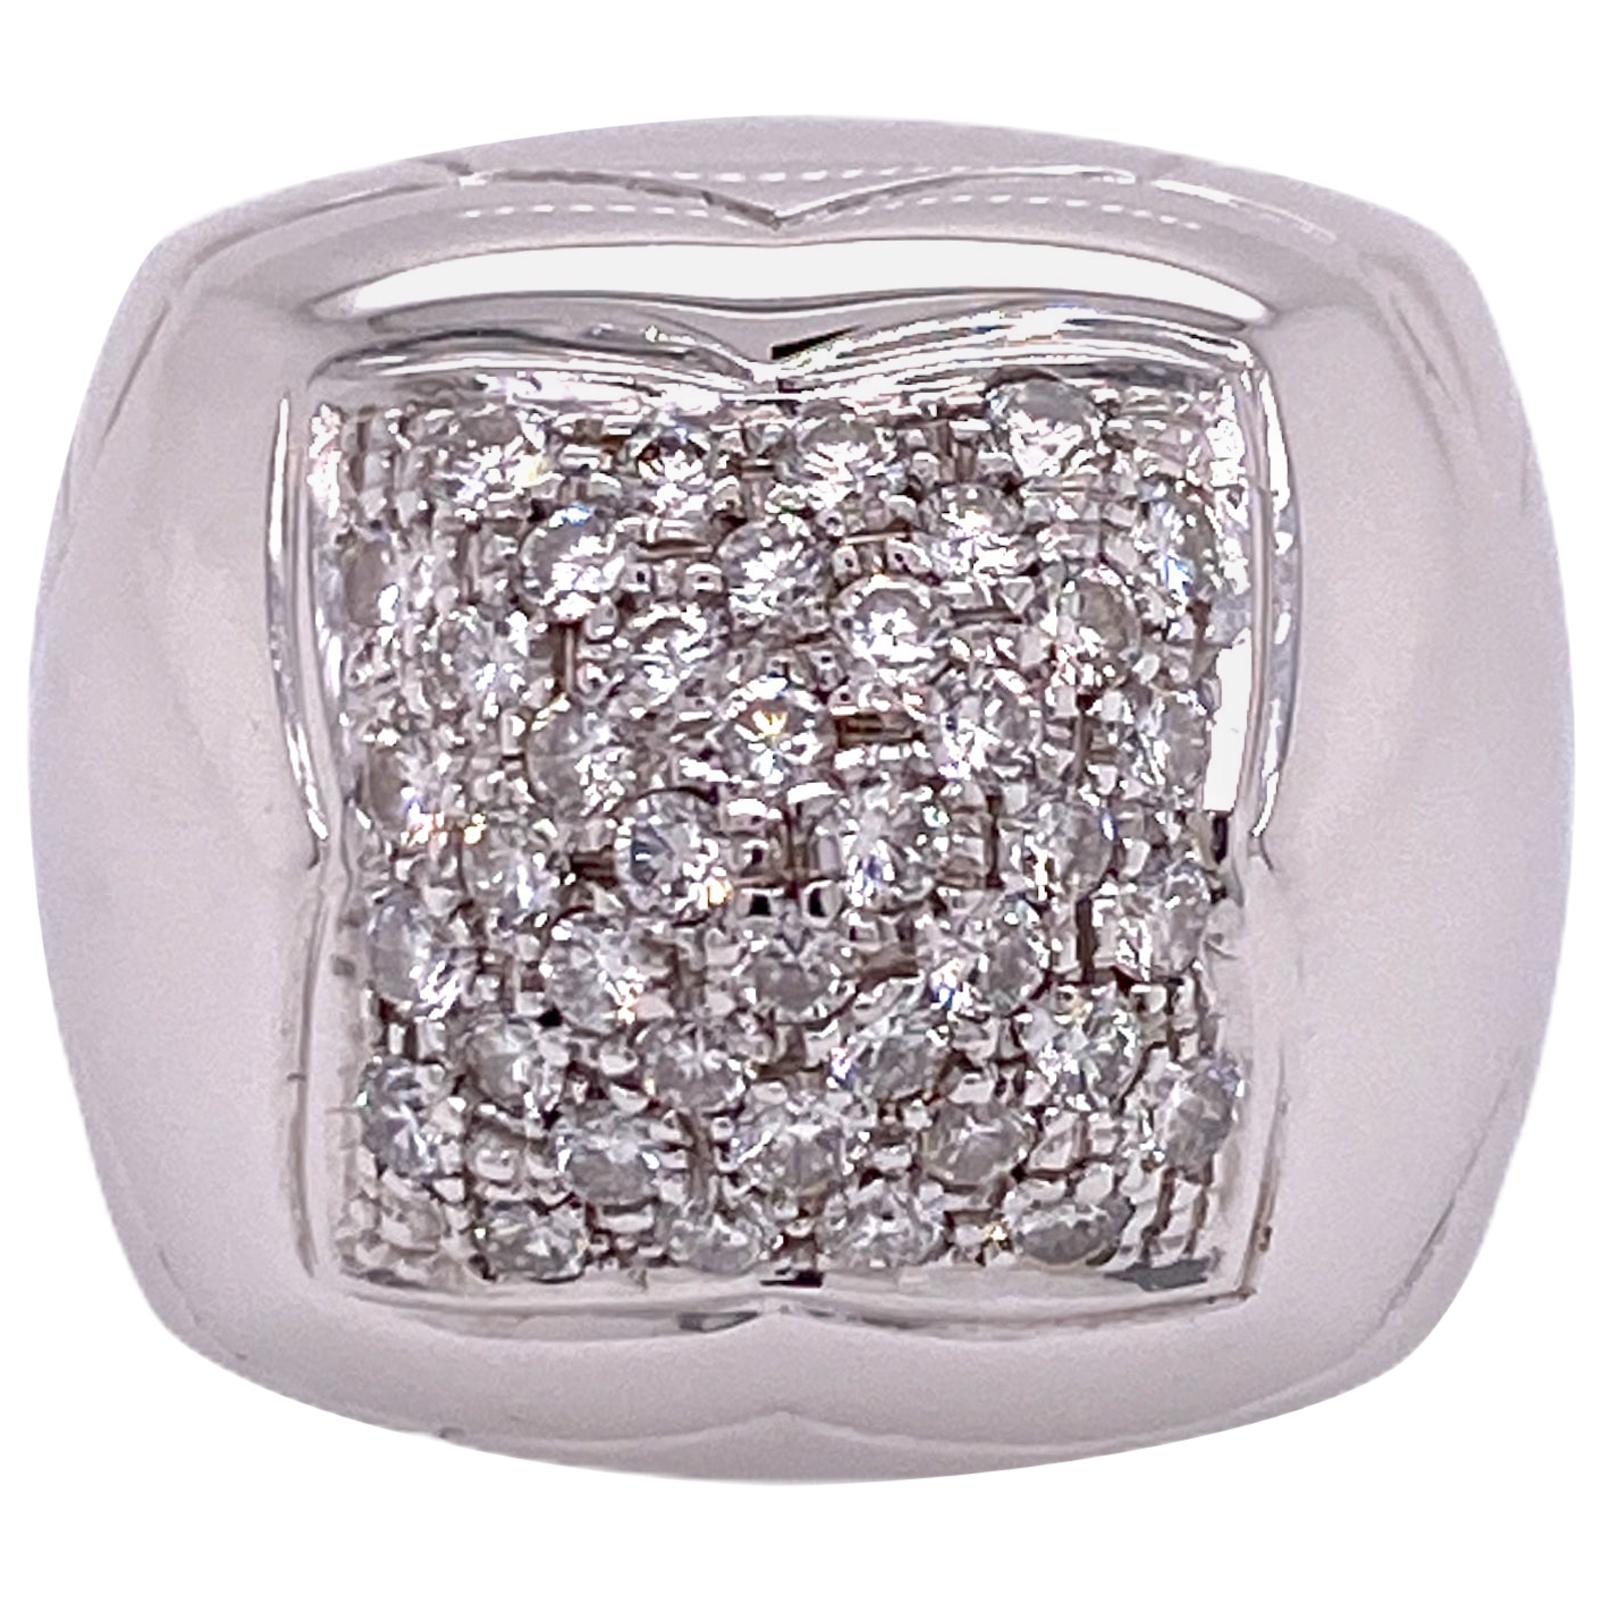 Bvlgari Diamond Pyramind 18 Karat White Gold Modern Ring Italy Designer 